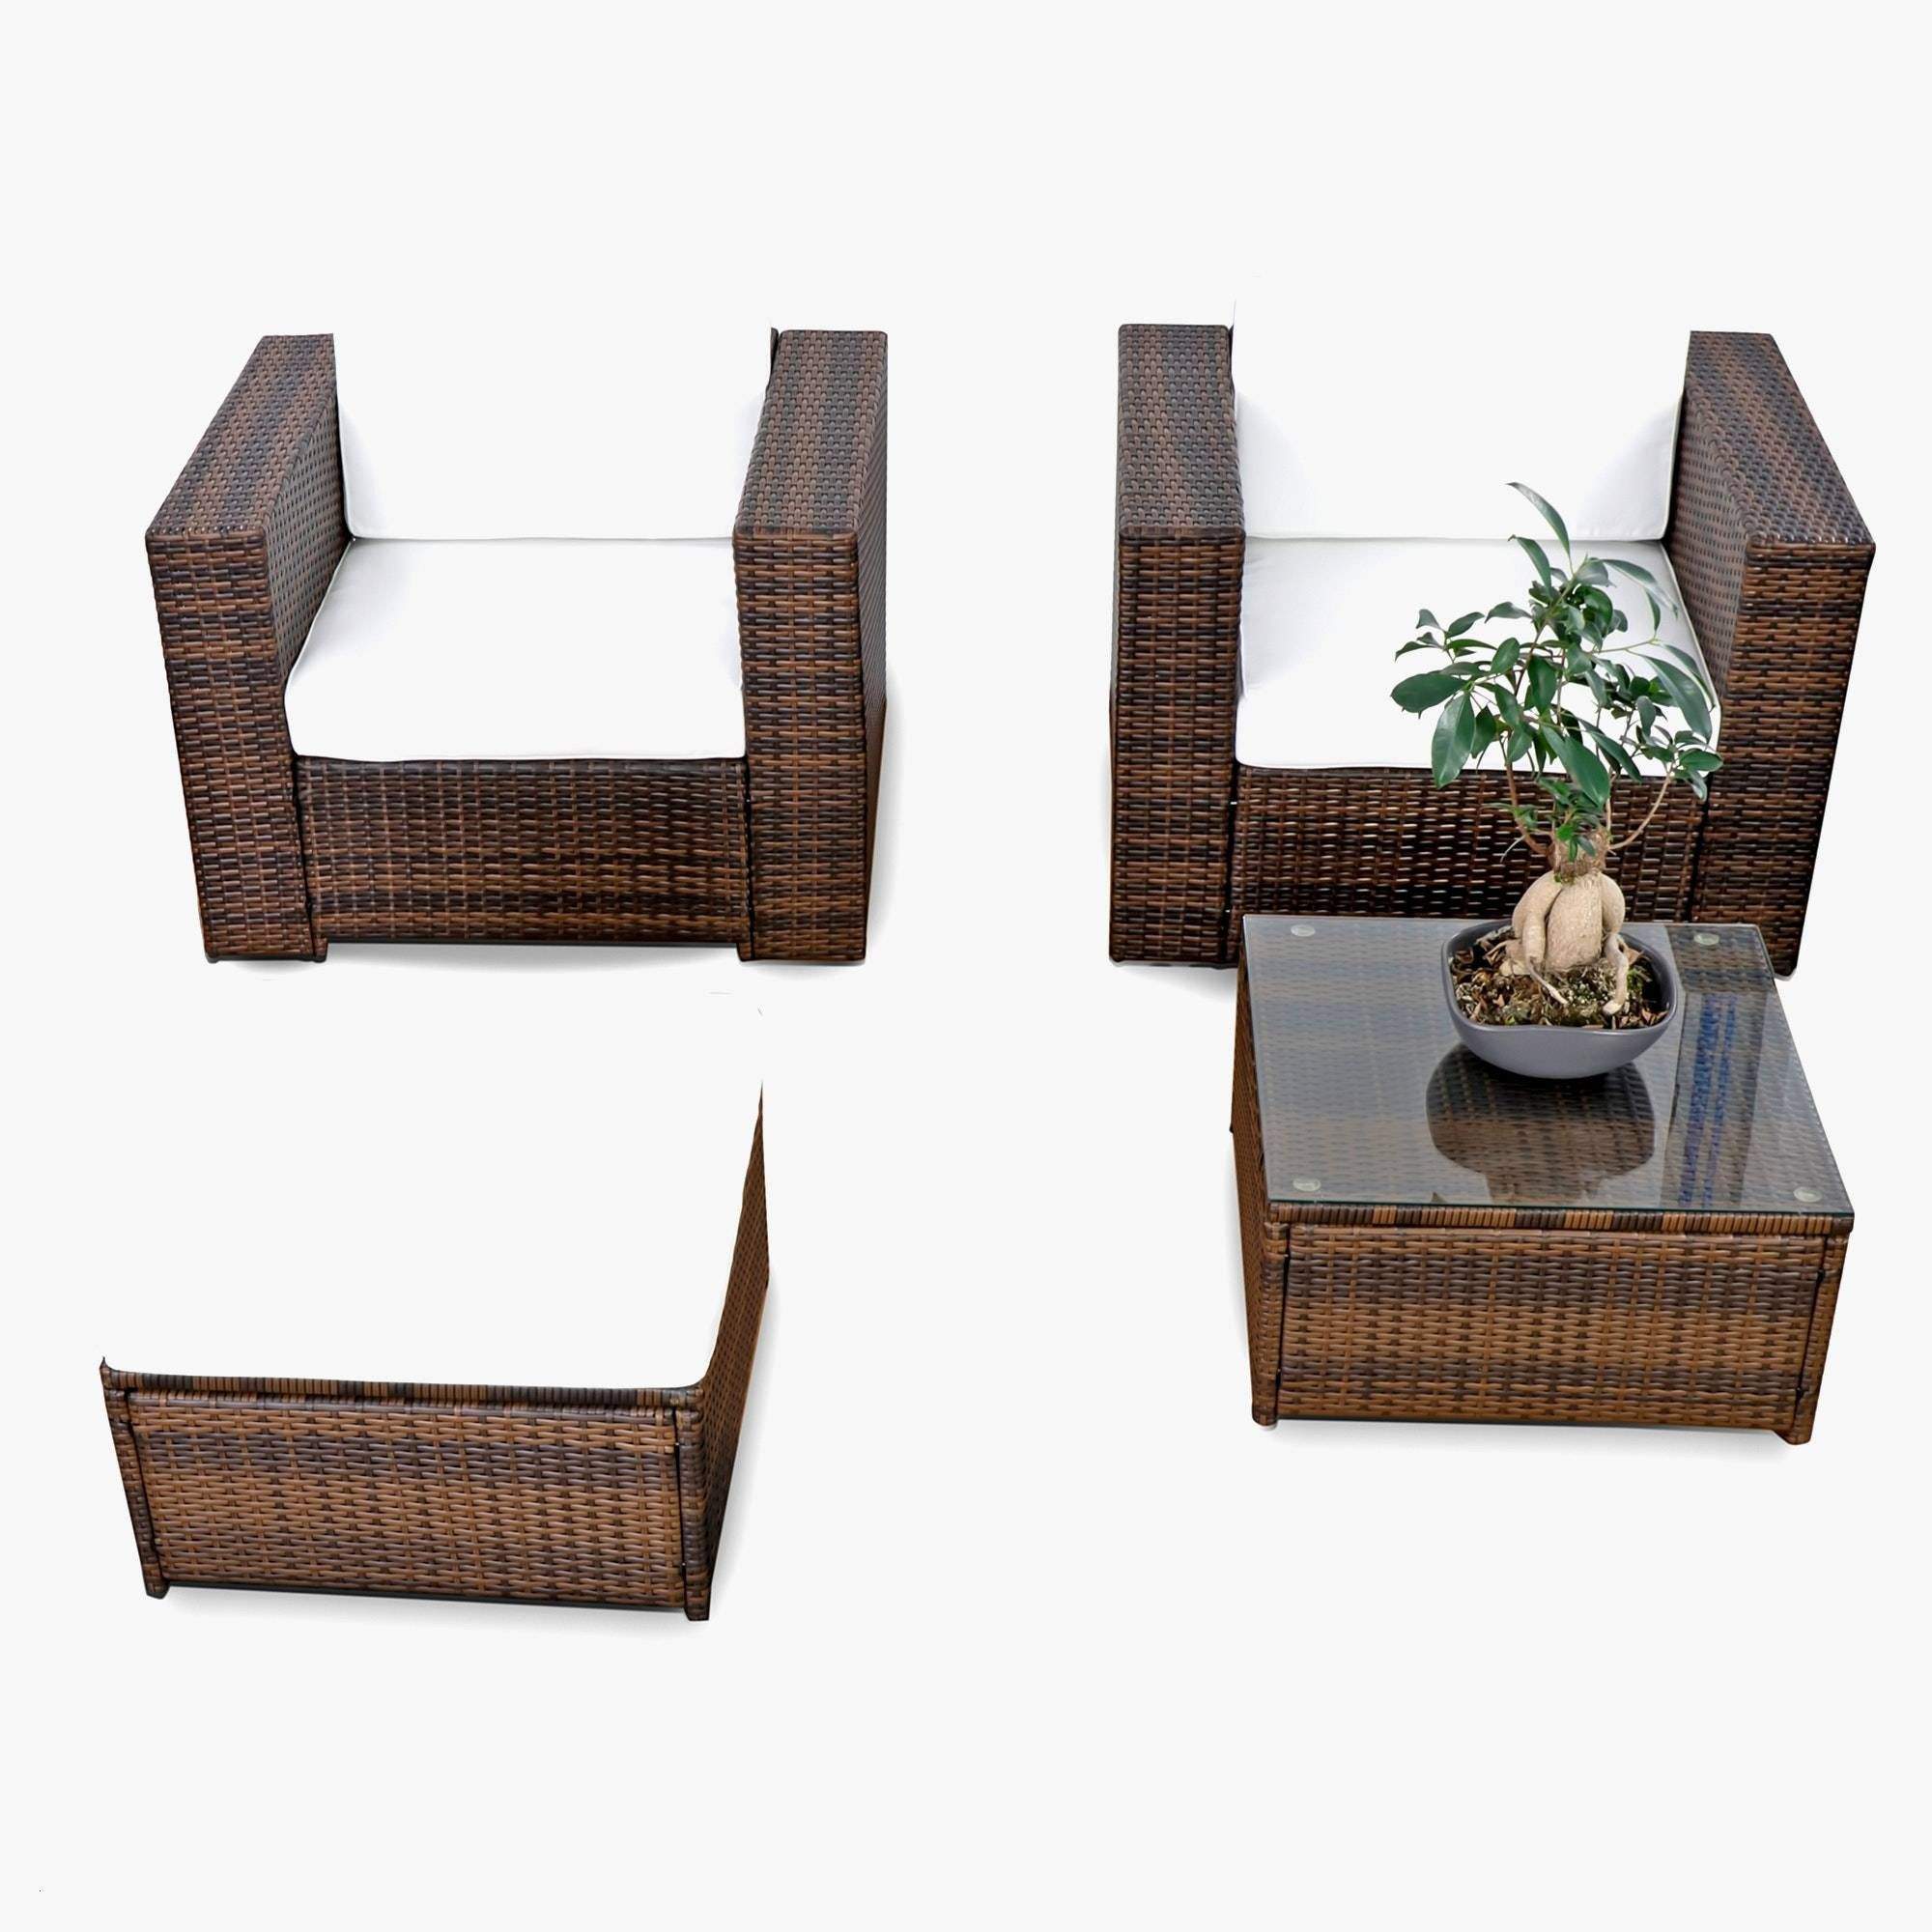 Holzdeko Für Den Garten Selber Machen Elegant 35 Luxus Ideen Für Garten Genial